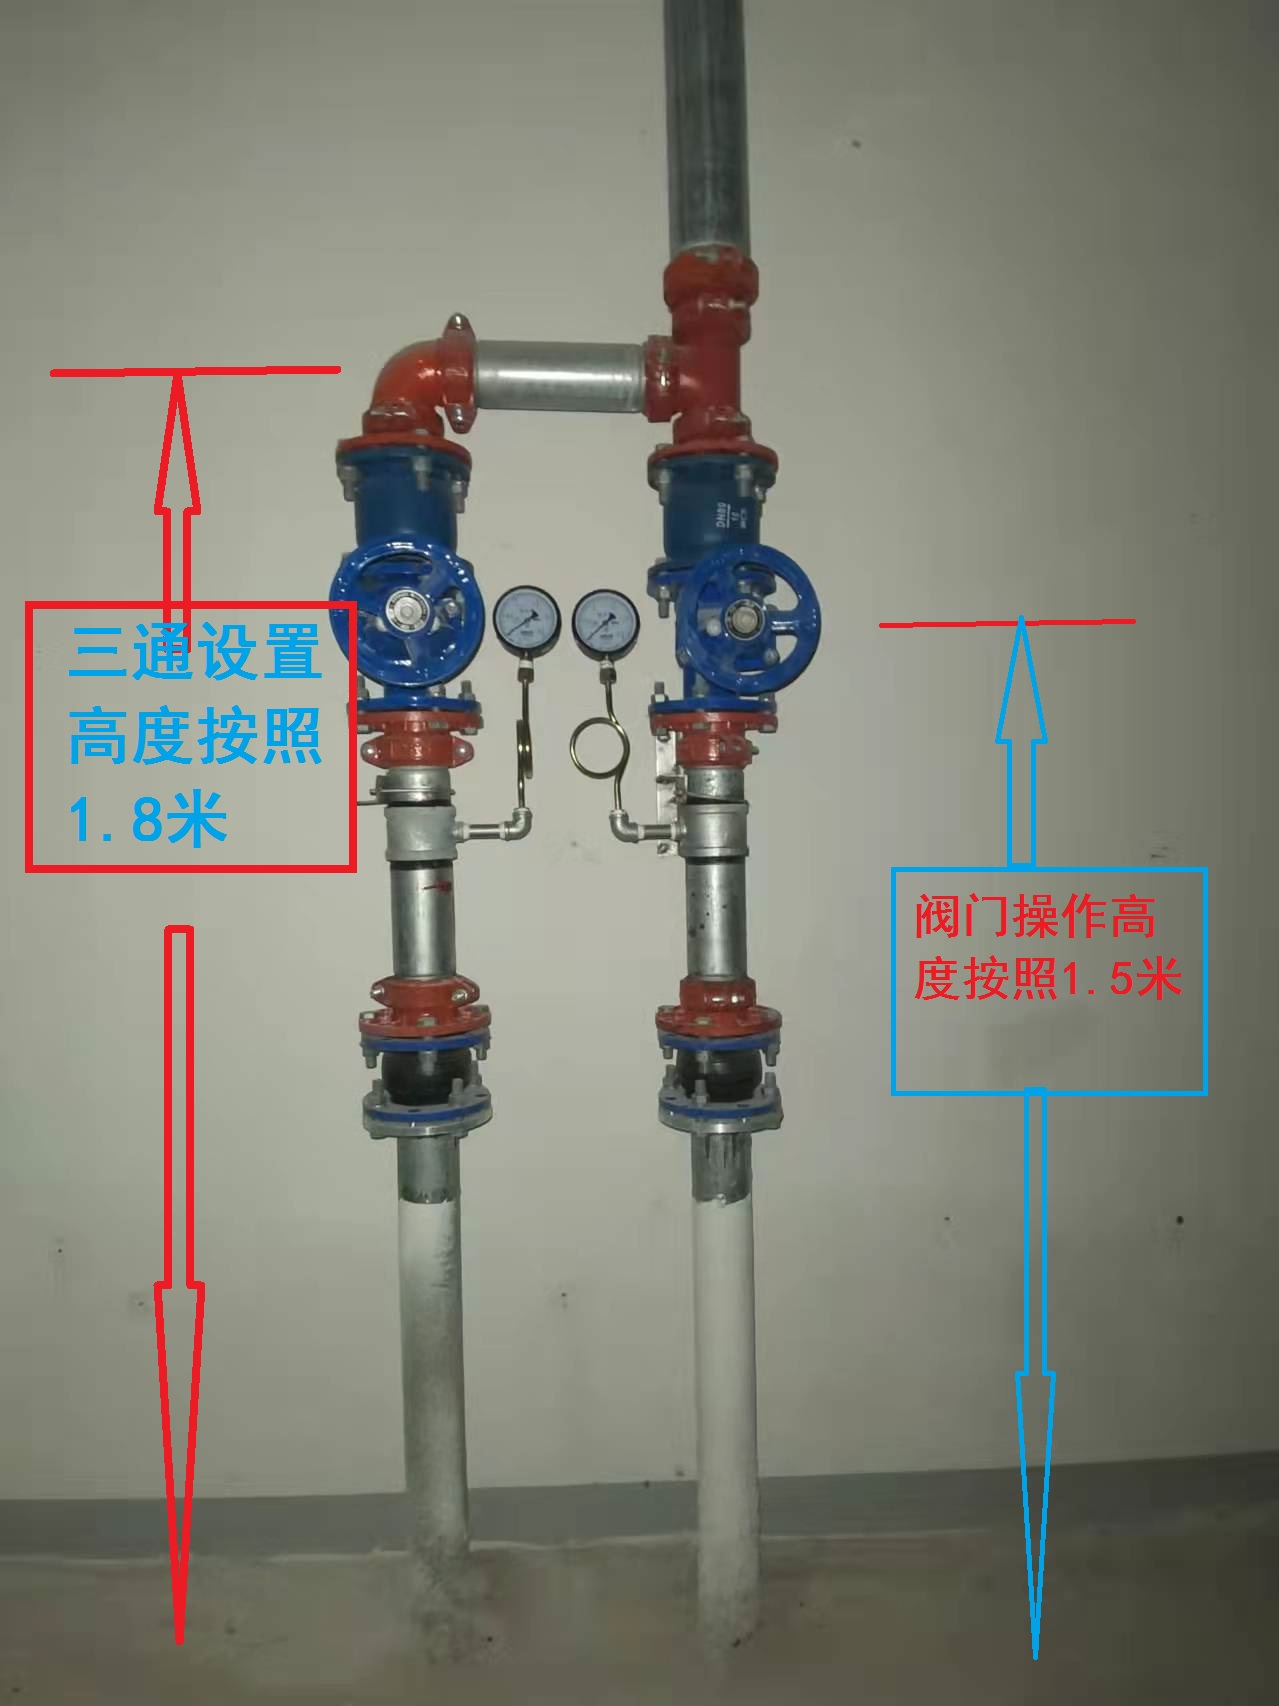 压力排水管管道是沟槽连接的 那个阀门应该是怎么连接 的全部是沟槽连